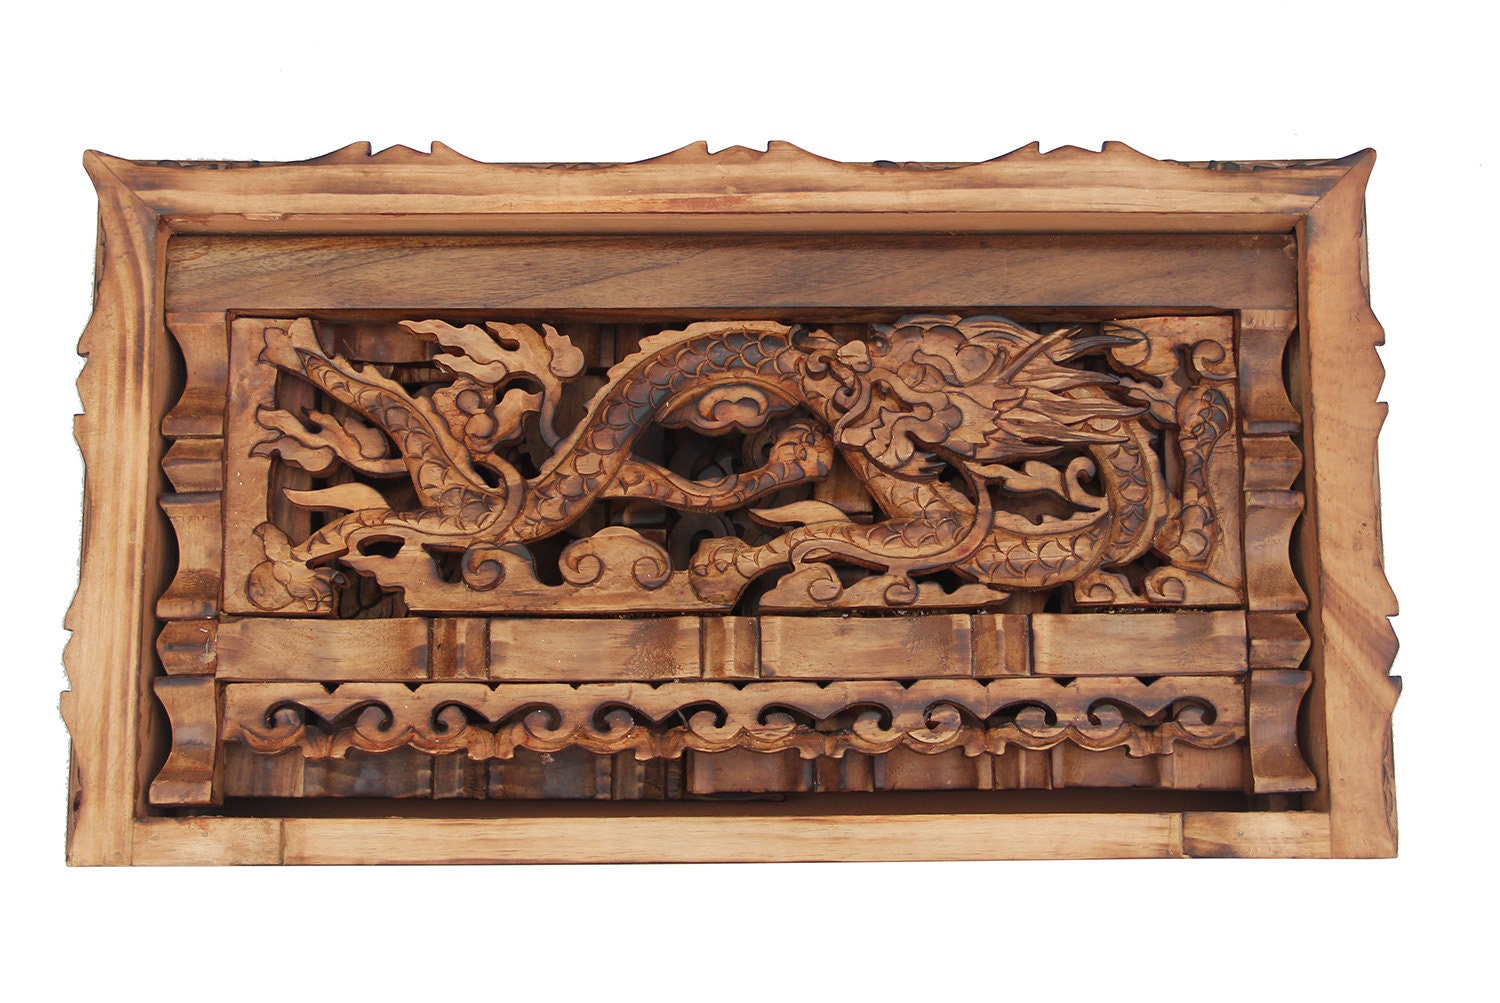 Hand-carved teak wood coasters 4x4 - Kajri Crafts